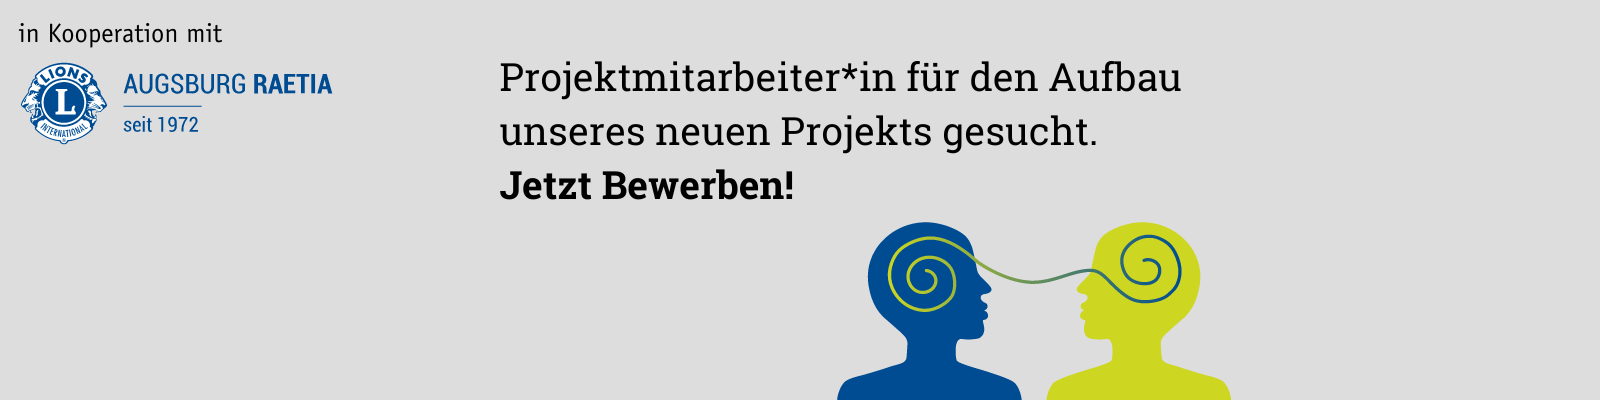 Projektmitarbeiter*in für den Aufbau unseres neuen Mentoring-Projekts in Augsburg gesucht.